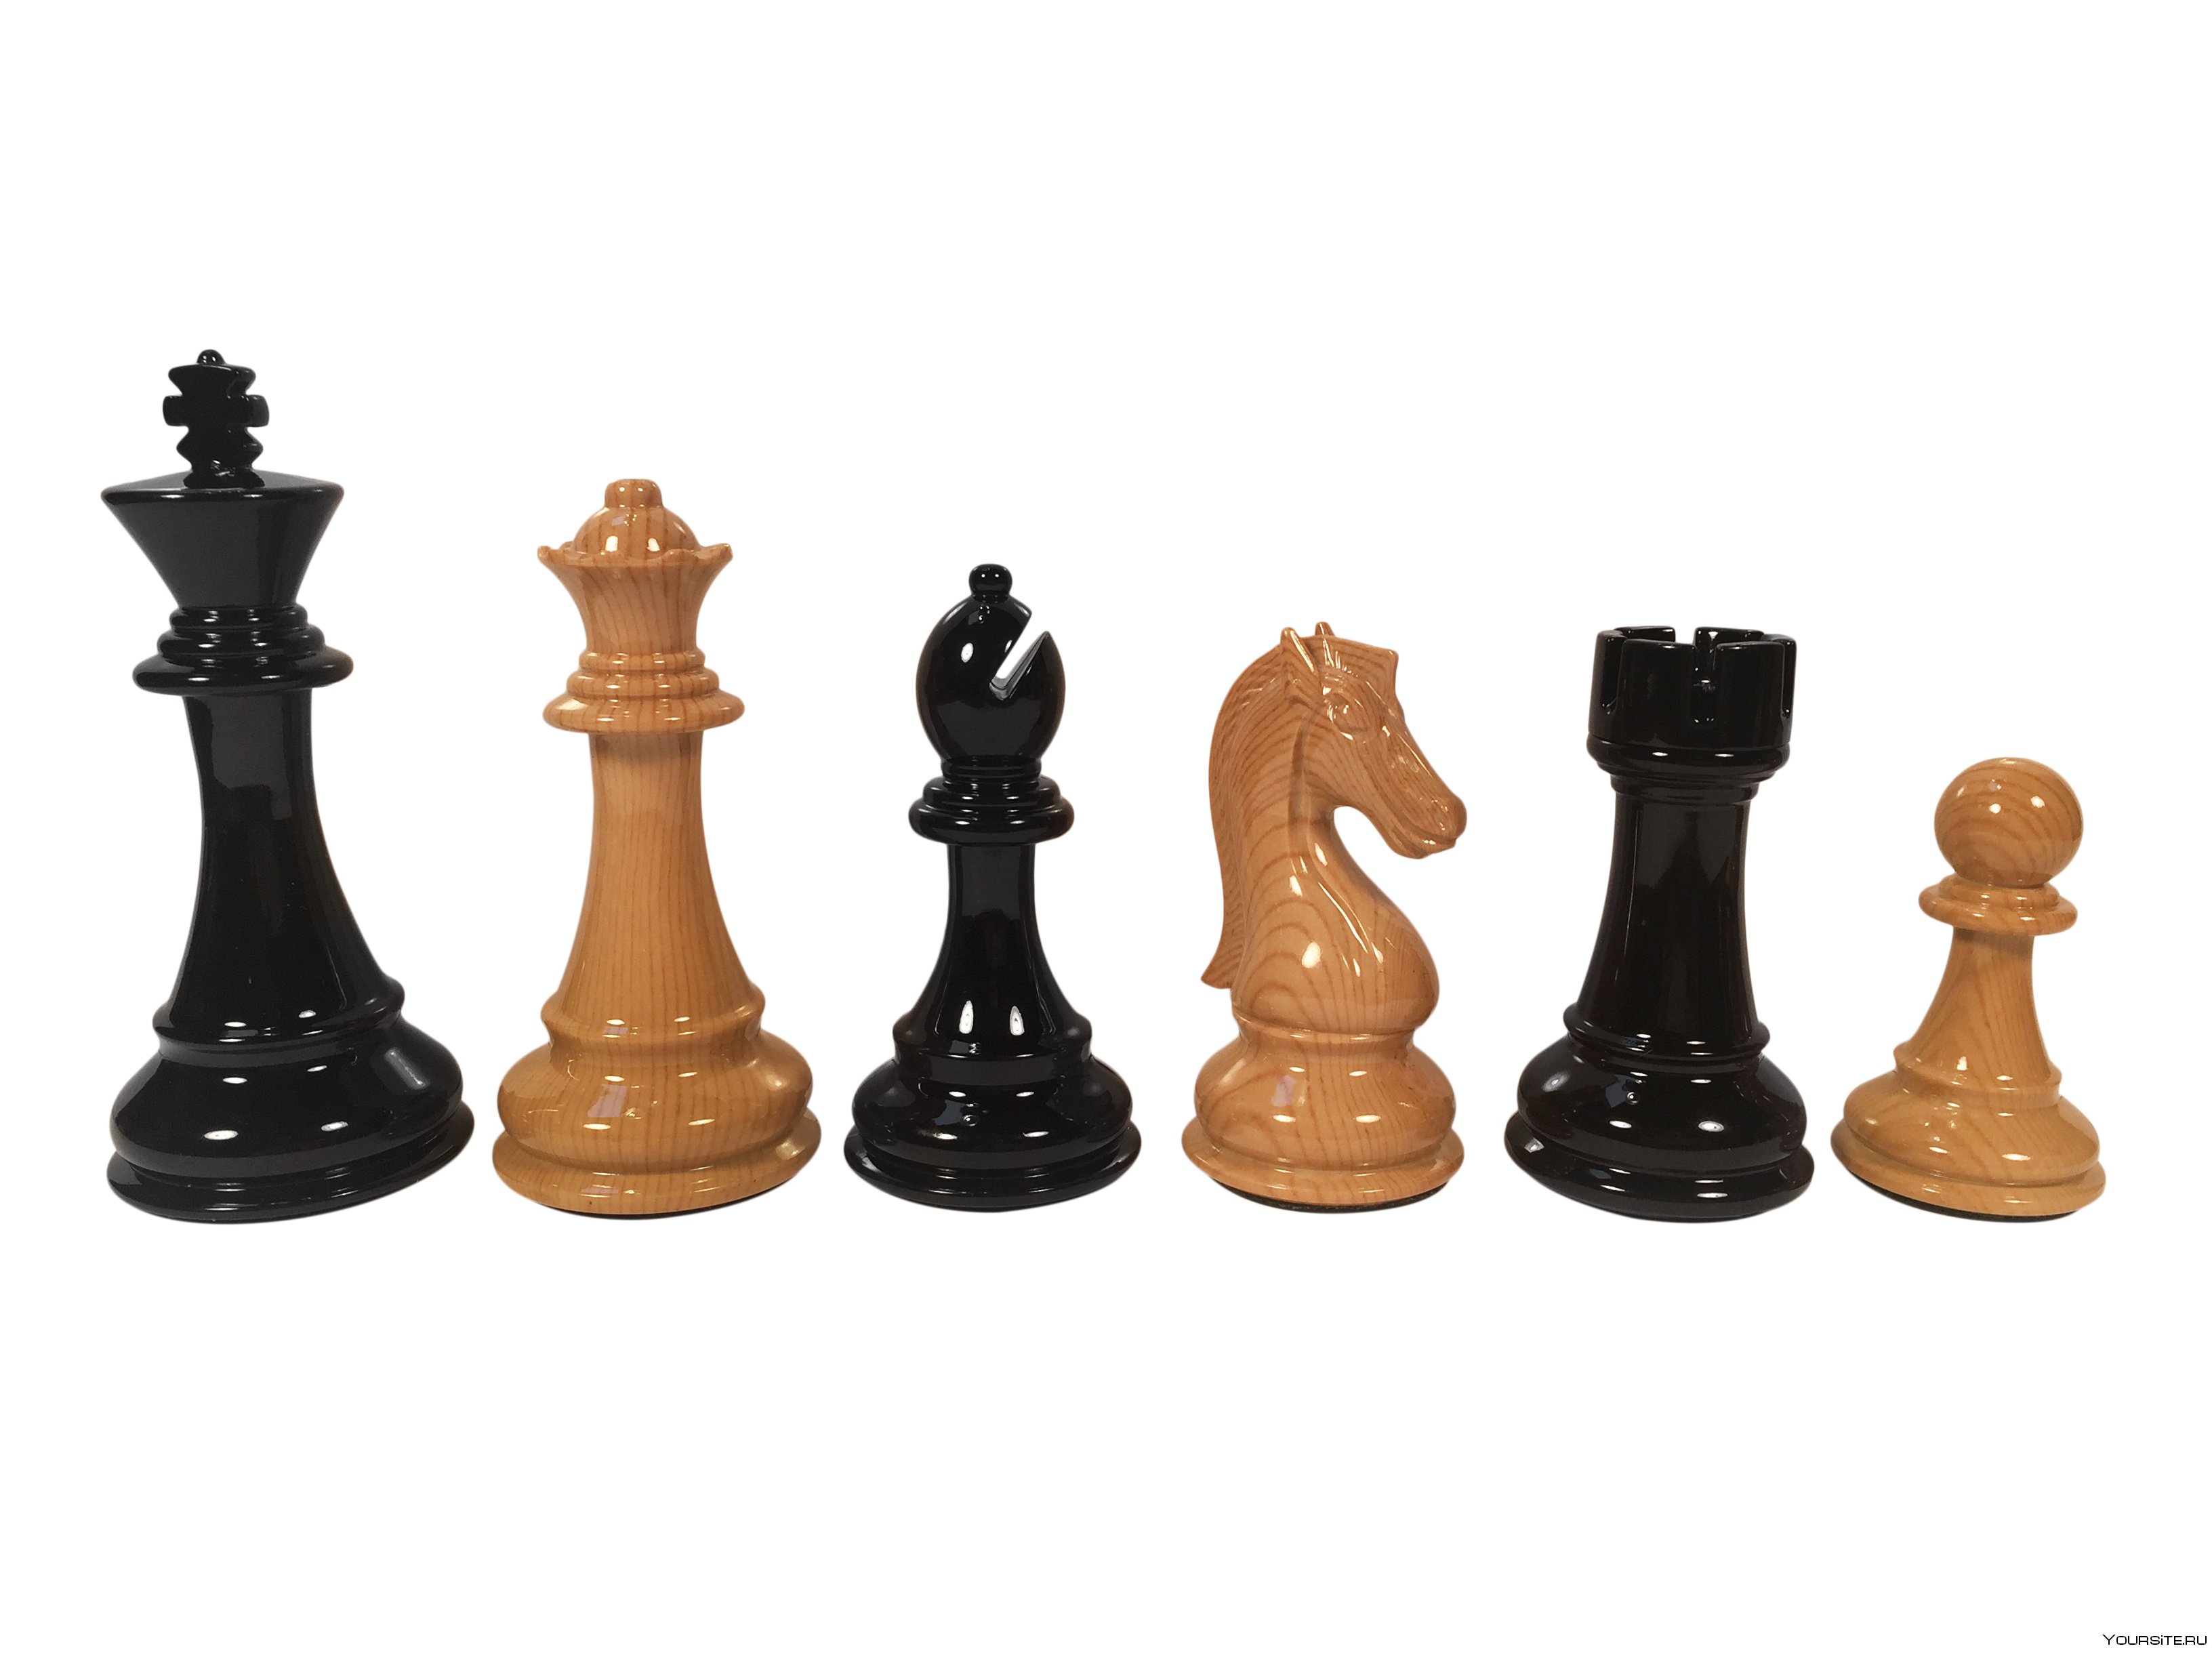 Кингчесс. Шахматная фигура Король. Шахматный конь Стаунтон. Шахматная фигура короля в мантии. Шахматная фигура Король фото.